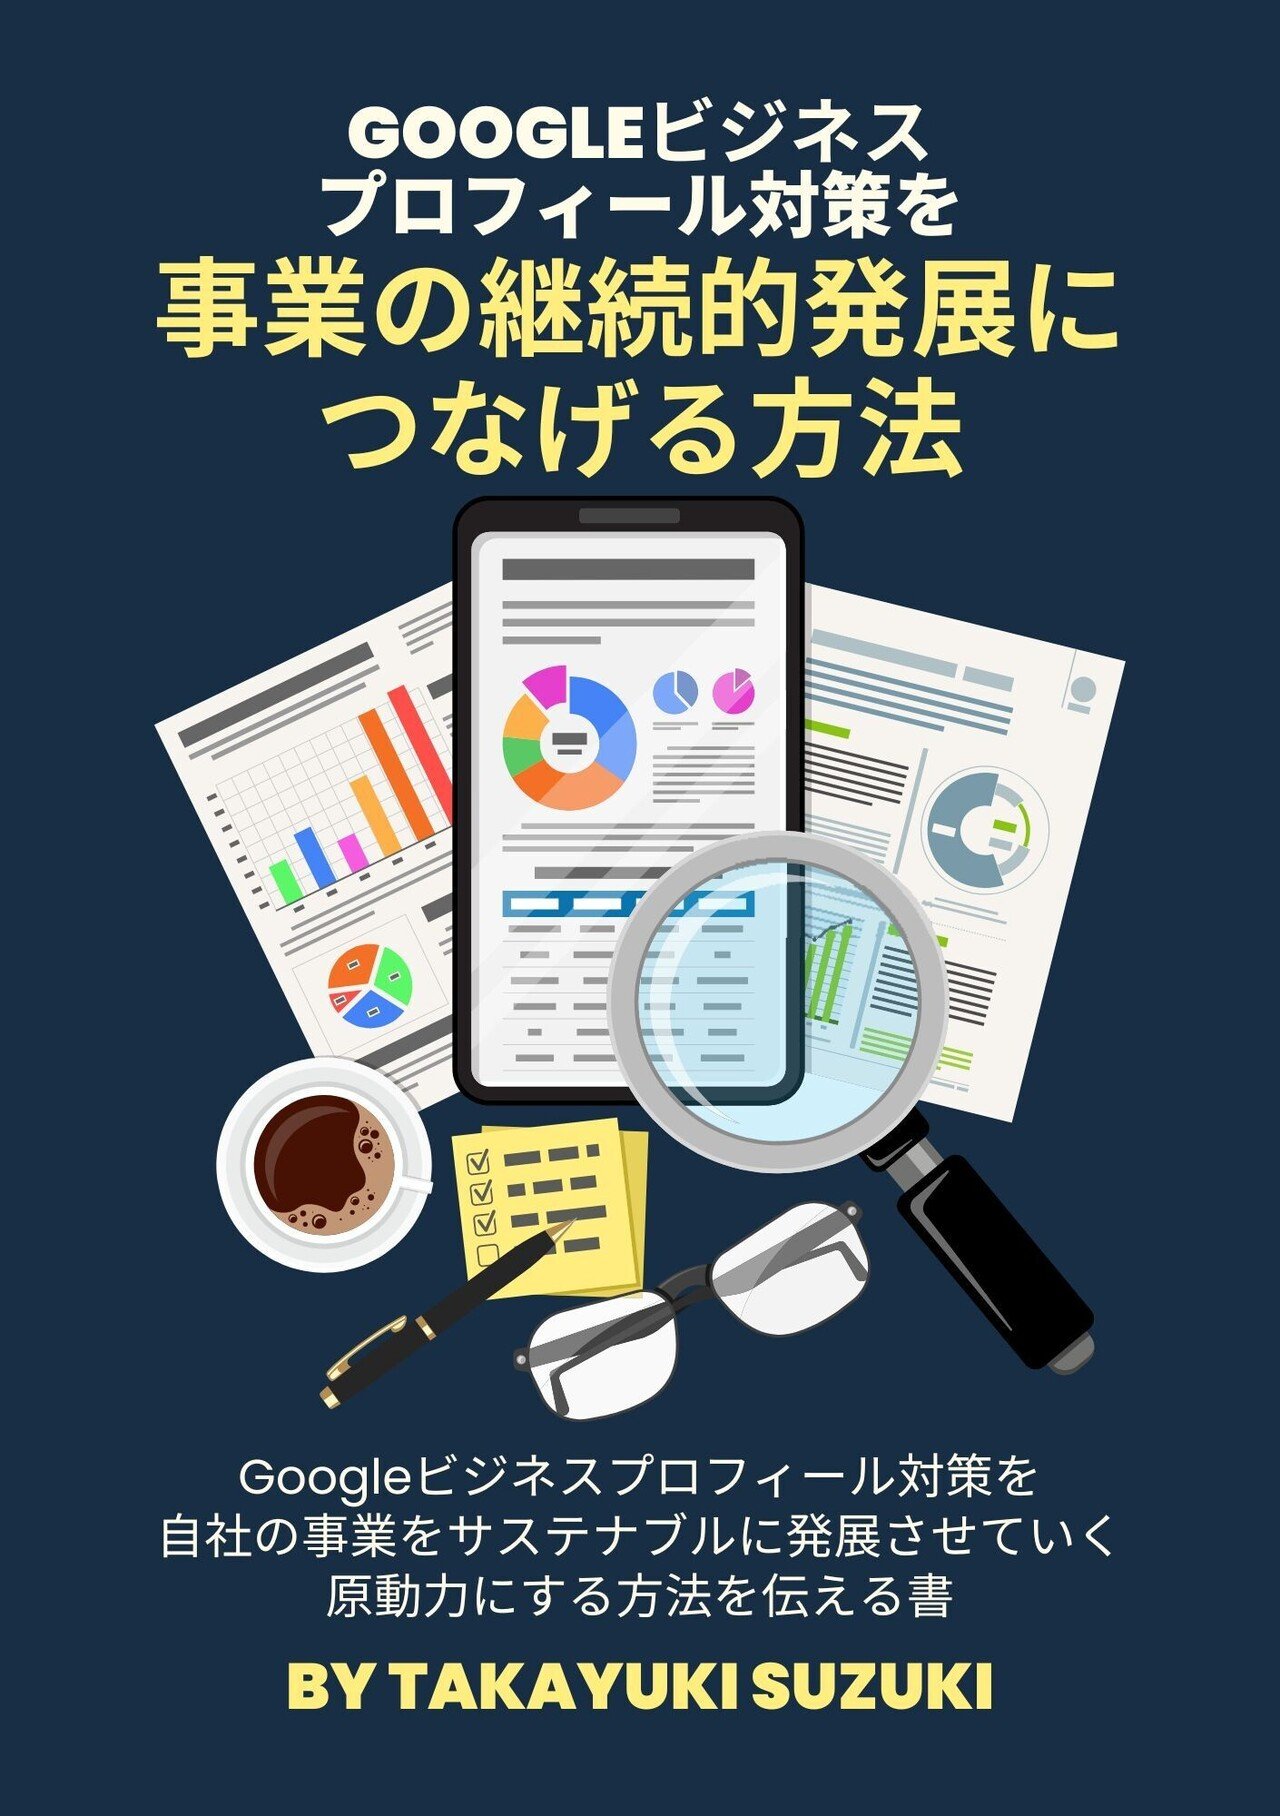 Googleビジネスプロフィール対策を事業の継続的発展につなげる方法__148___210_mm_